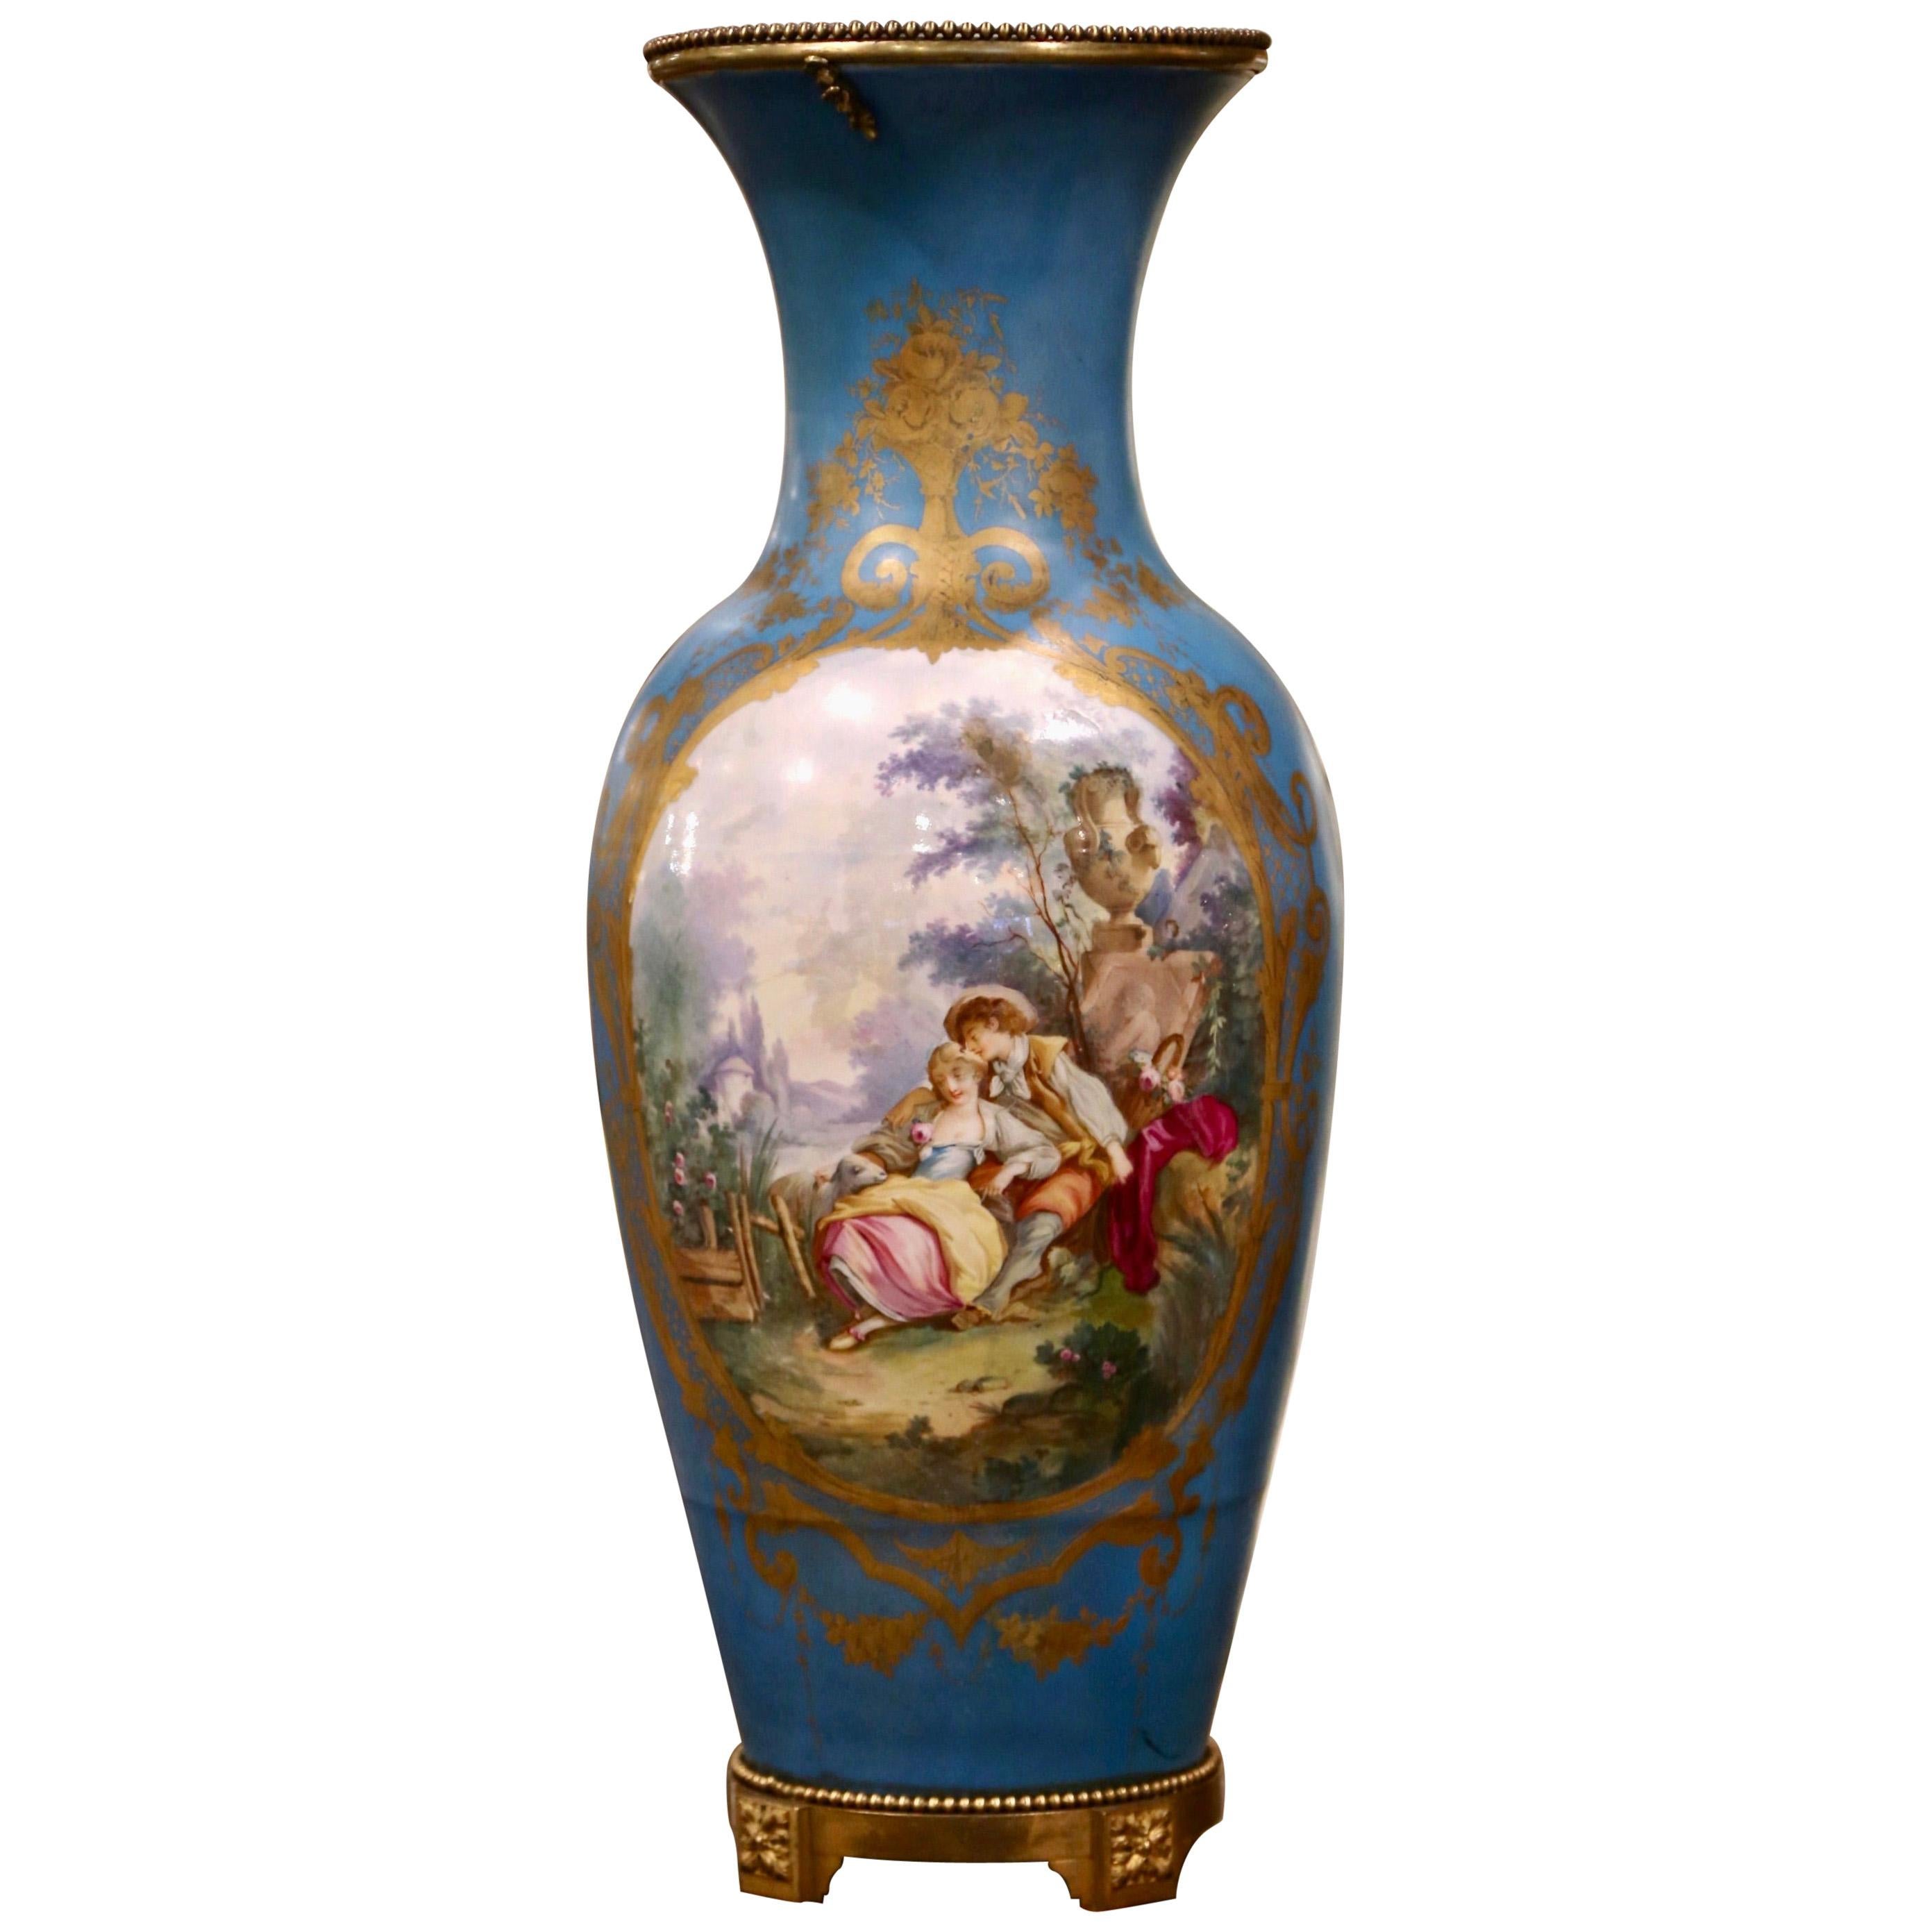 Grand vase en porcelaine de Sèvres du 19ème siècle peint à la main et monté sur bronze